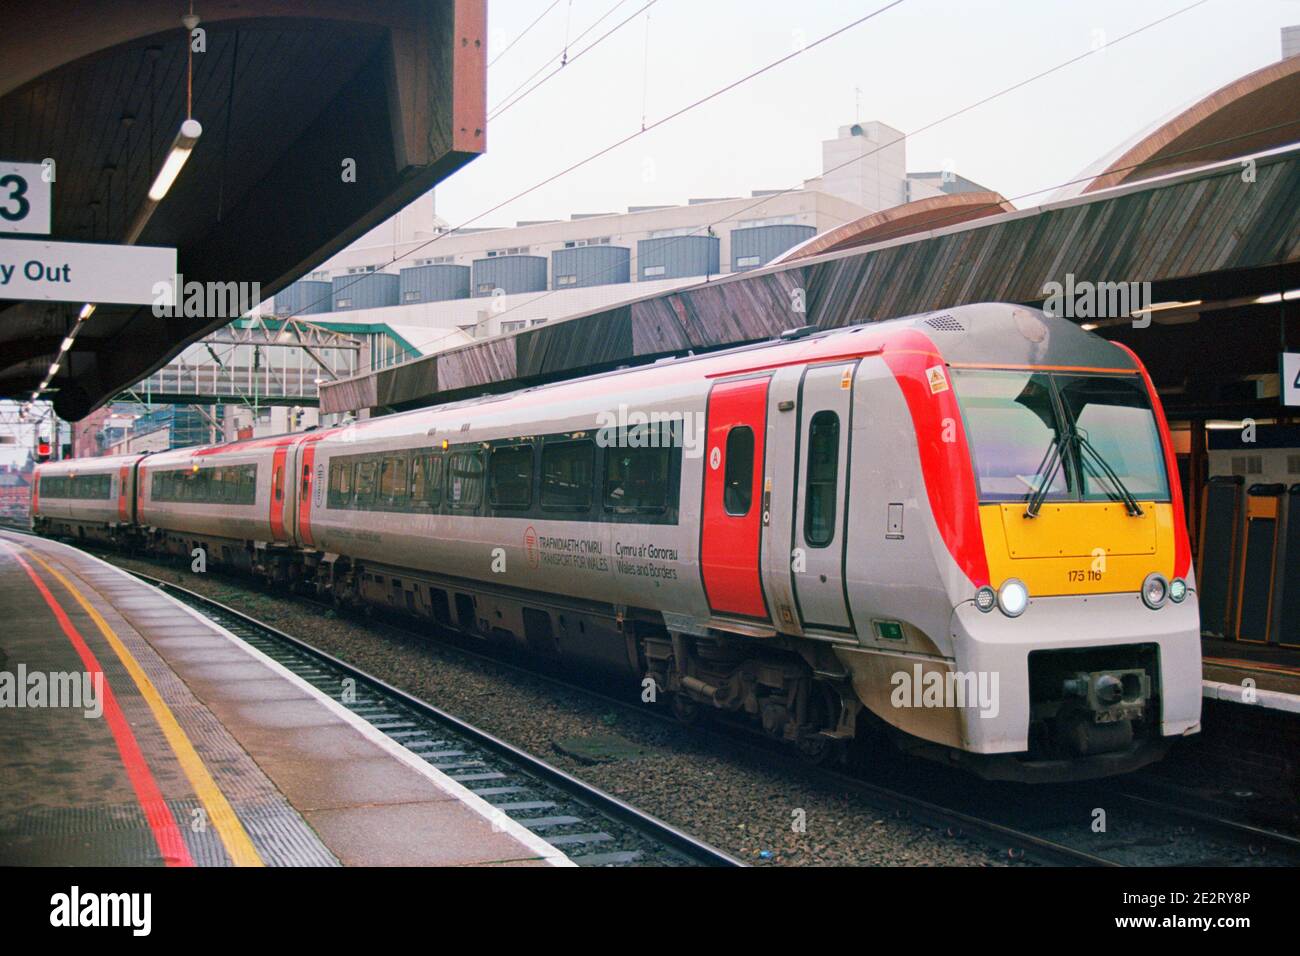 Manchester, Großbritannien - 31. Dezember 2020: Ein Diesel-Personenzug (Klasse 170), der von Transport for Wales am Bahnhof Manchester Oxford Road betrieben wird. Stockfoto